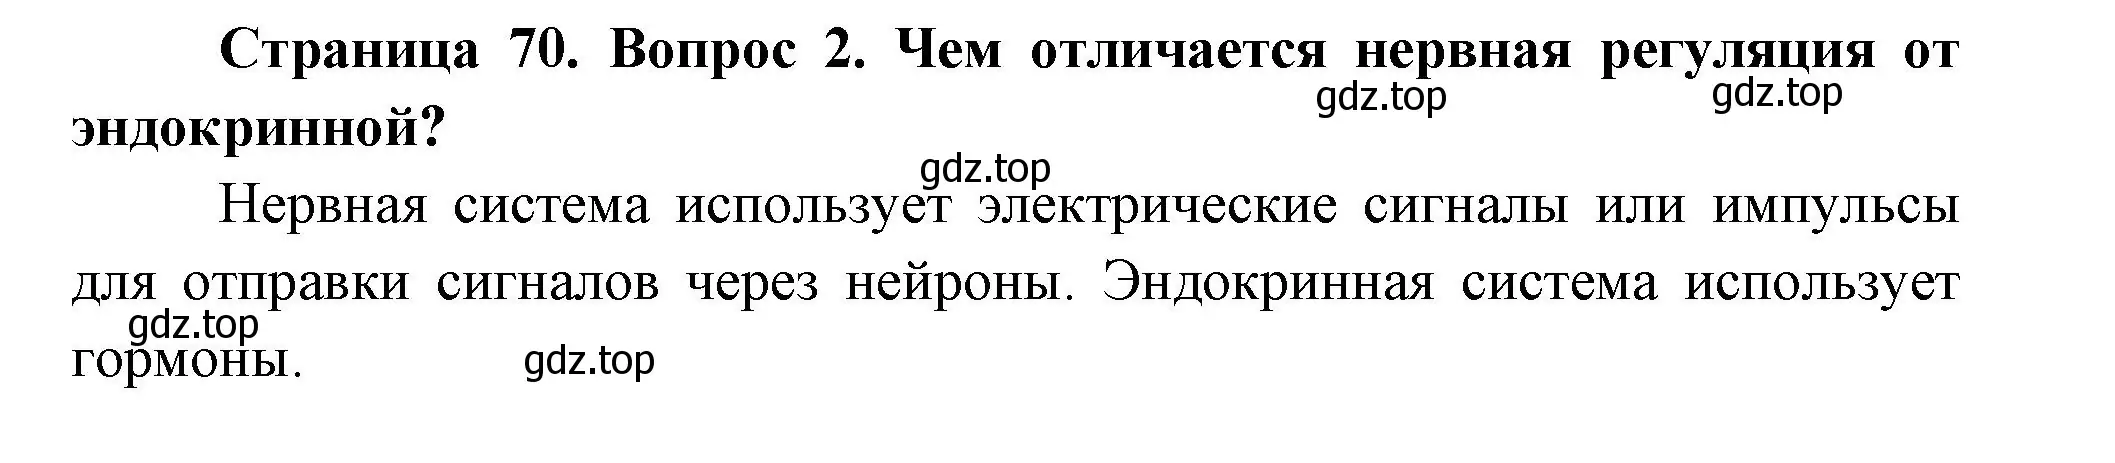 Решение номер 2 (страница 70) гдз по биологии 9 класс Пасечник, Каменский, учебник